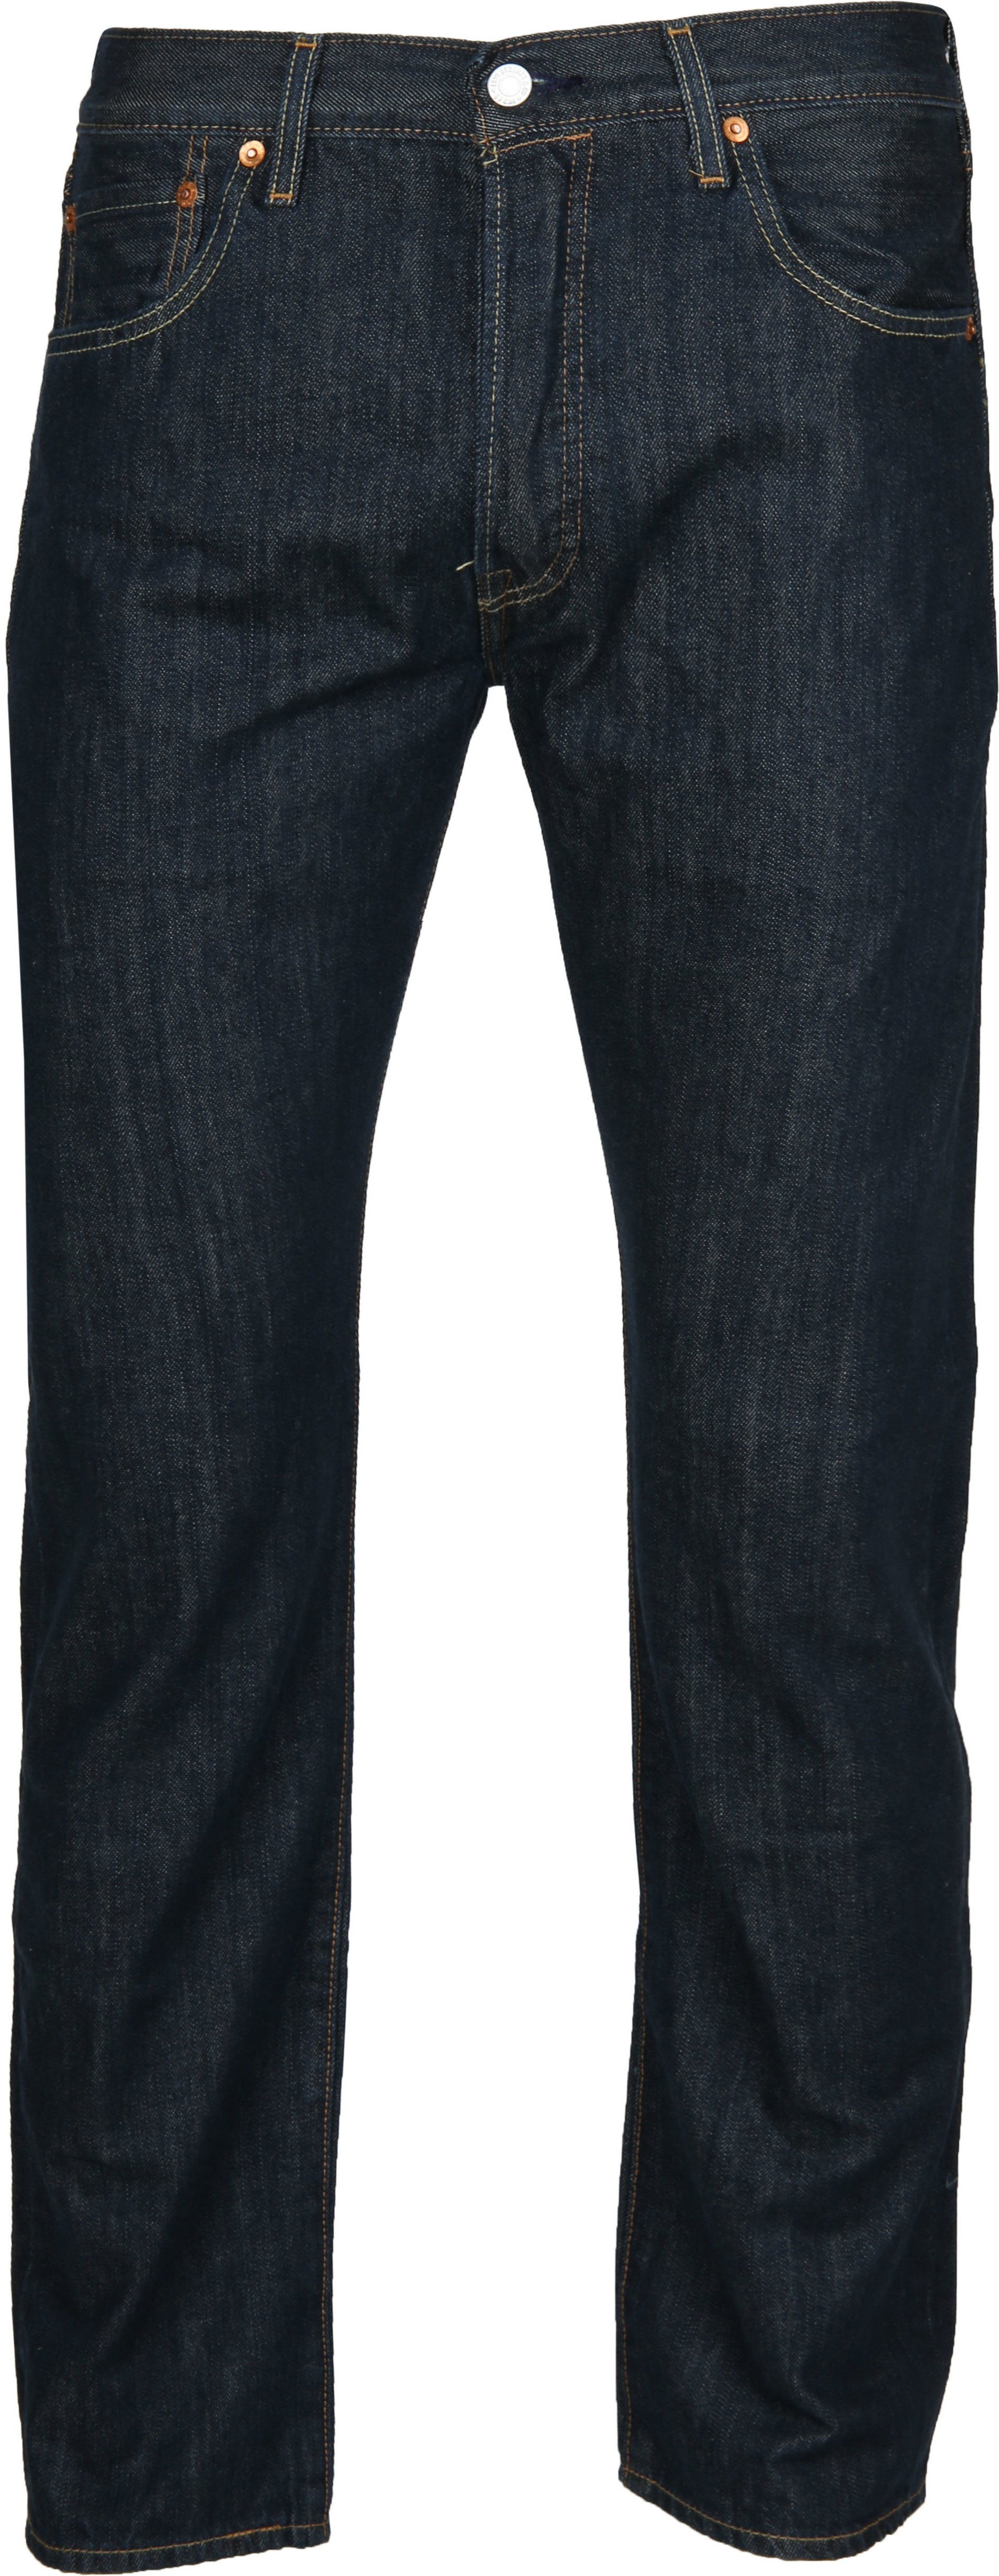 Levis - Levi's jeans 501 original fit 0162 blue size w 31